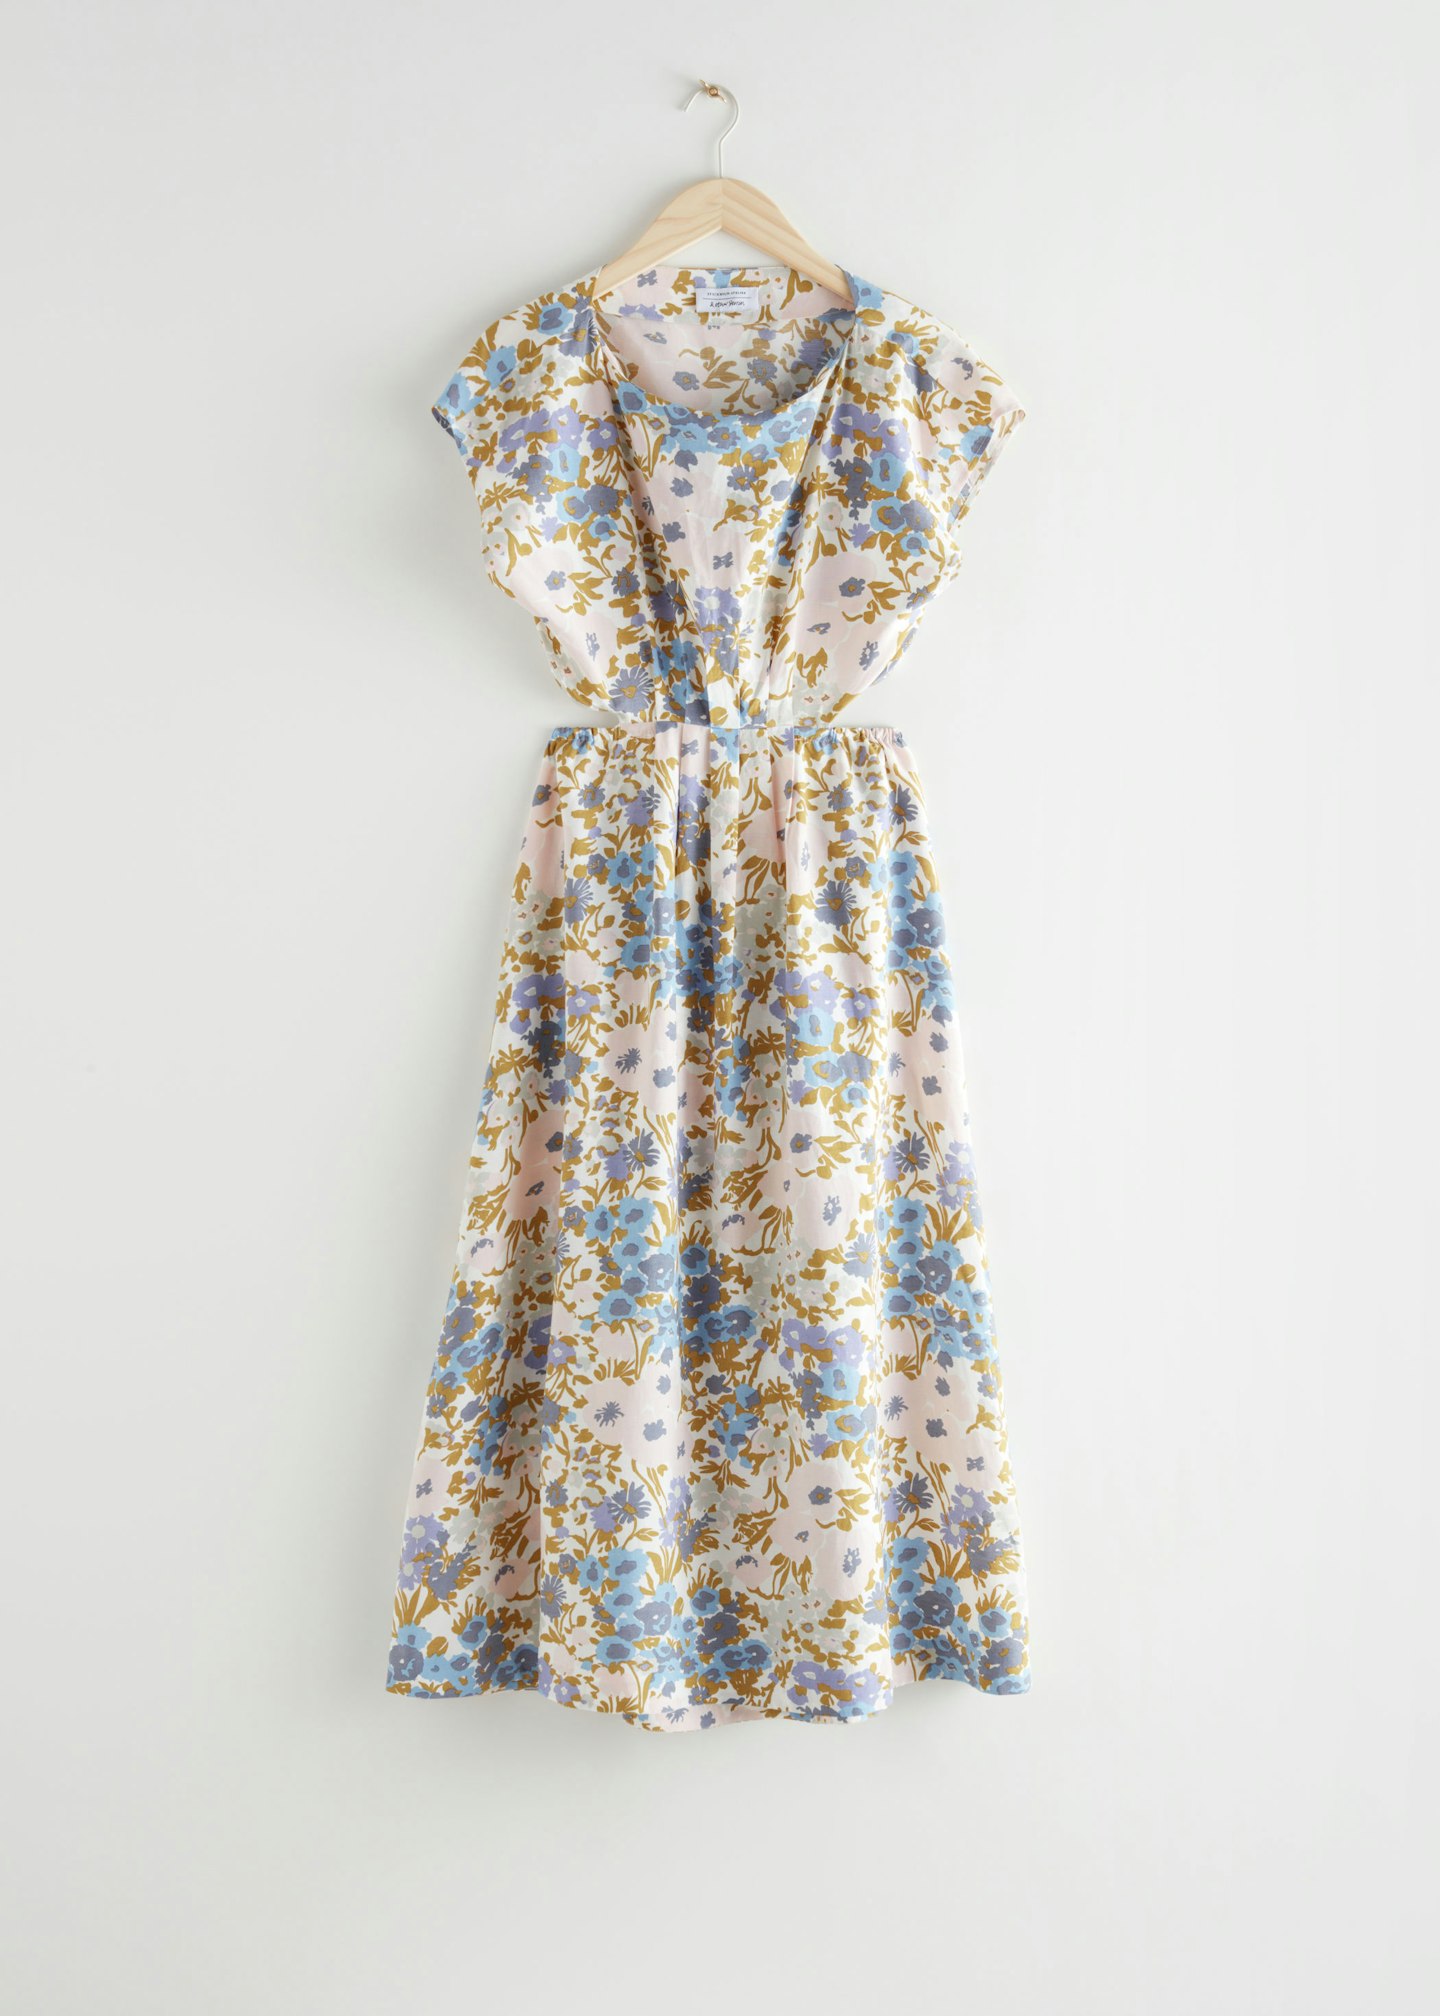 & Other Stories, Elasticated Waist Dress, £95